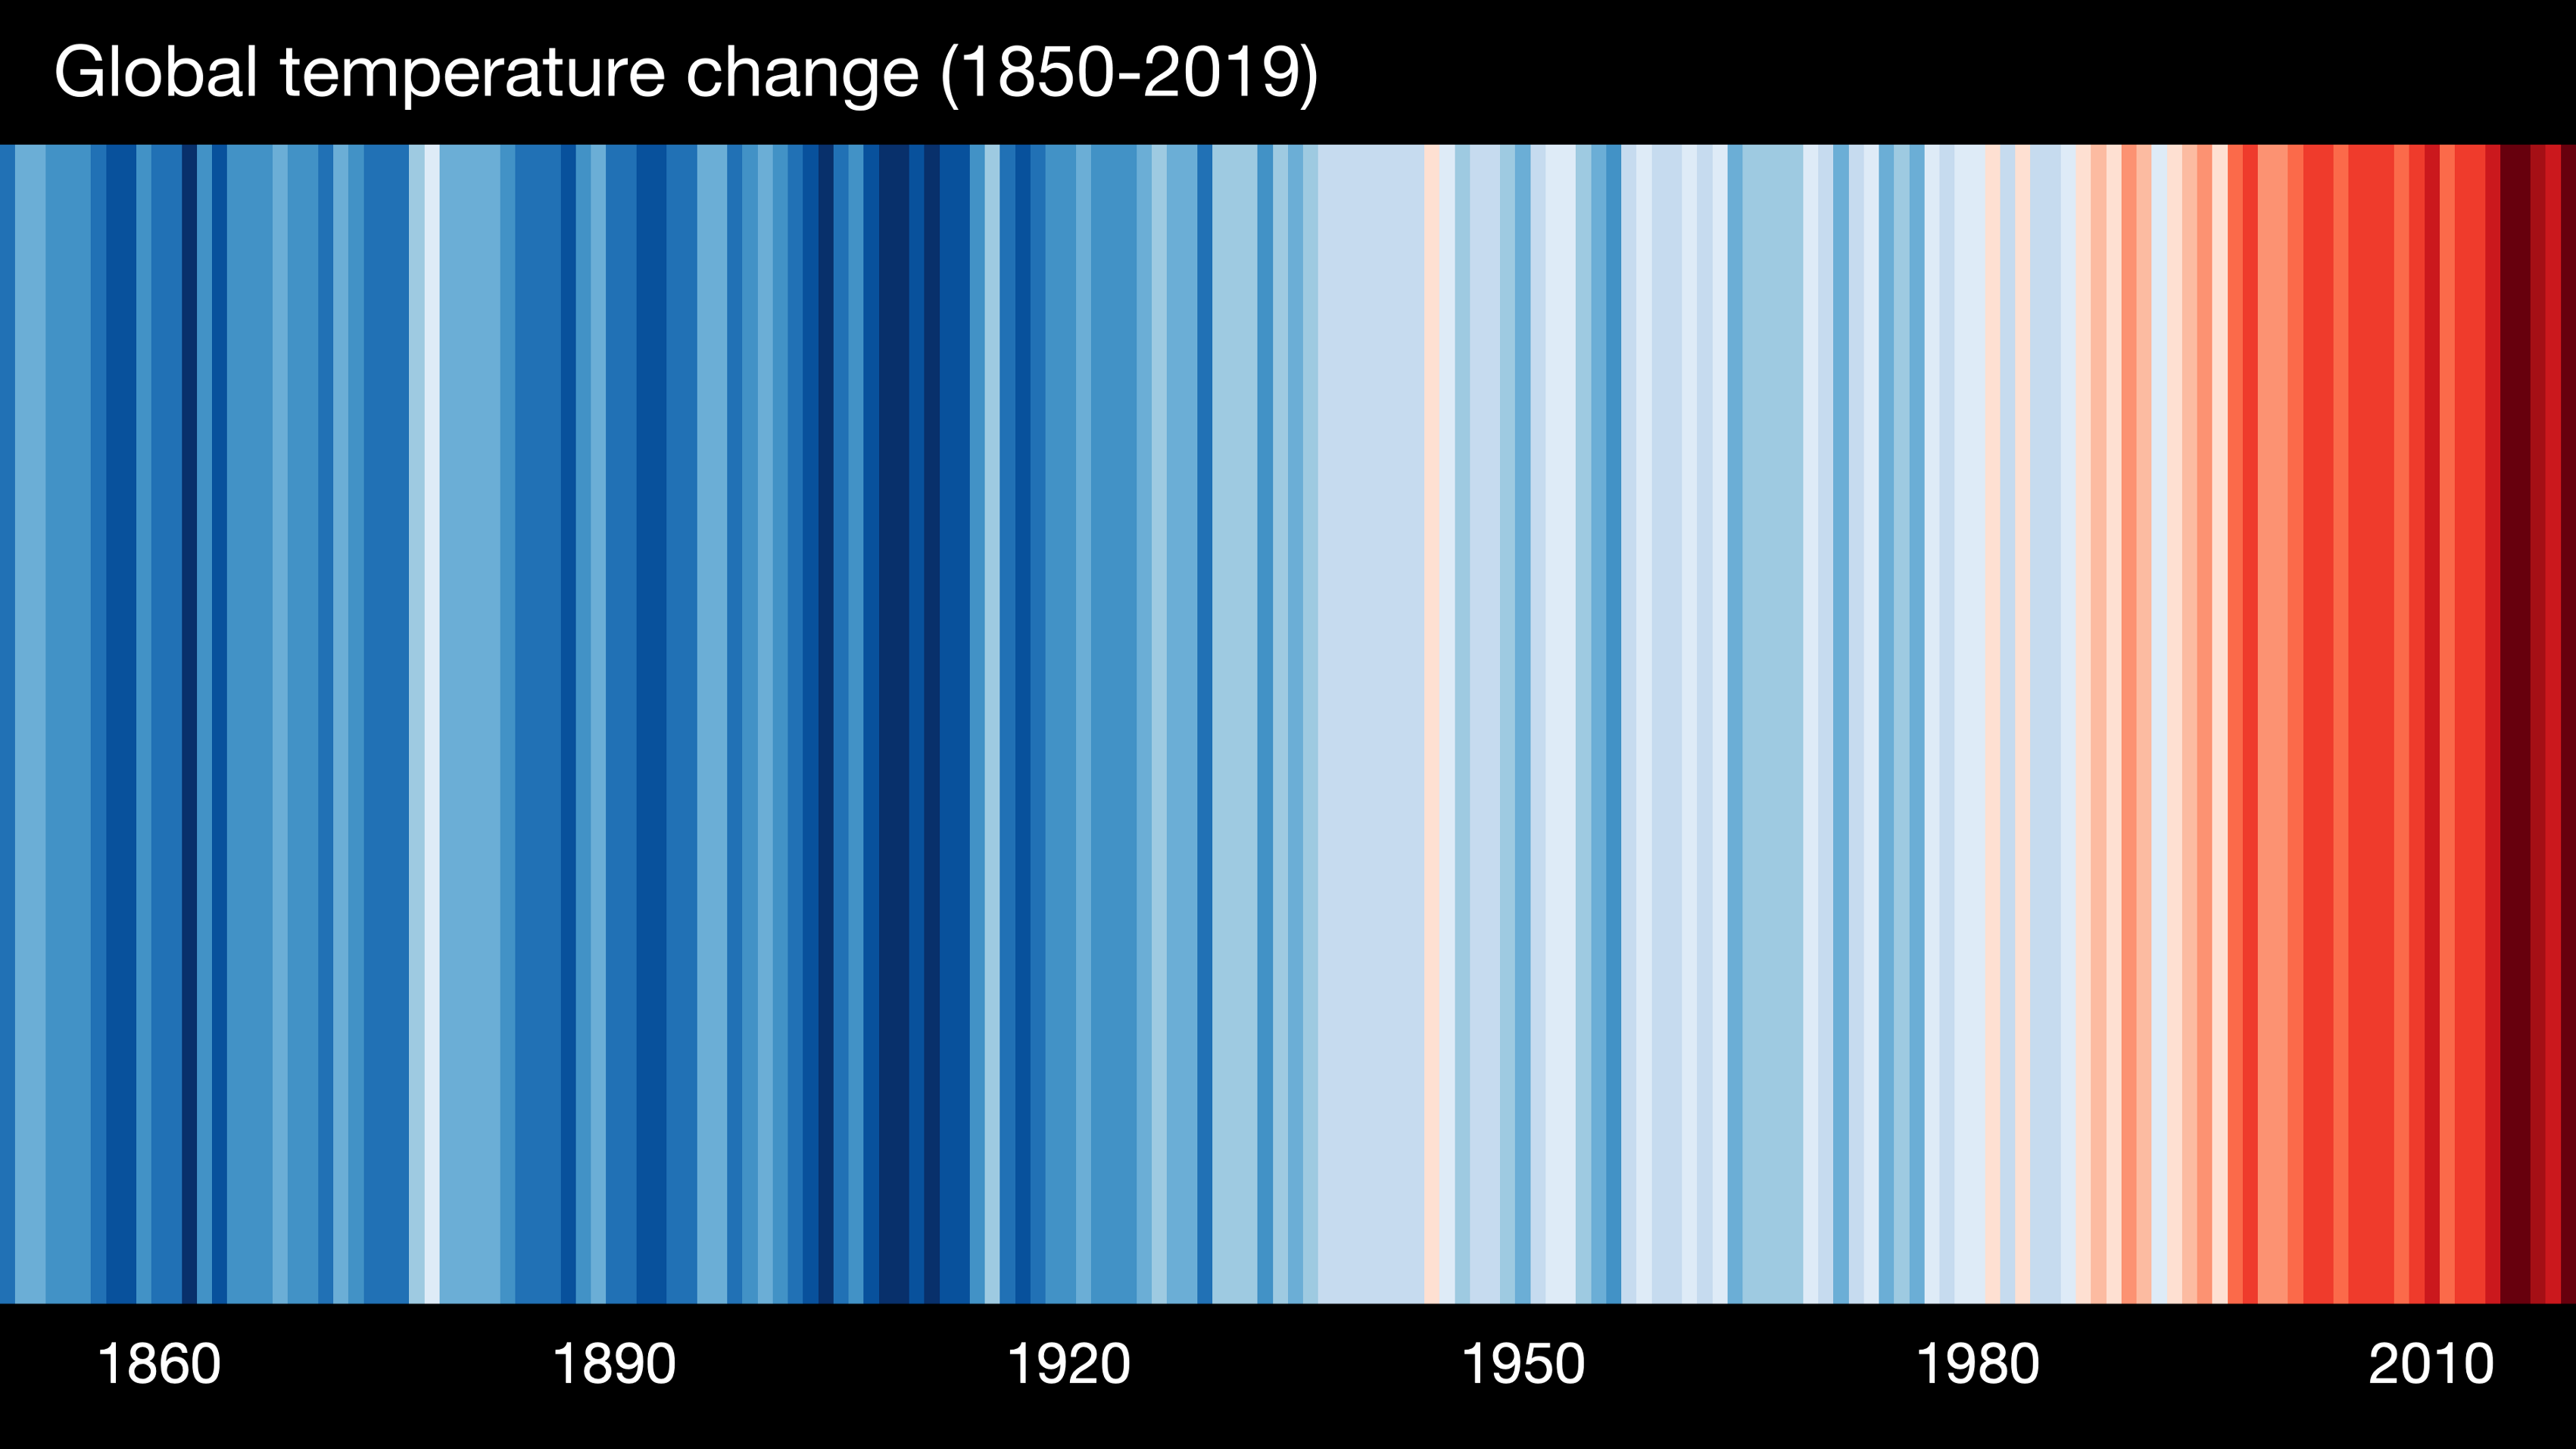 alt= “Listras coloridas ordenadas cronologicamente que mostram em vermelho o aumento progressivo da temperatura global”